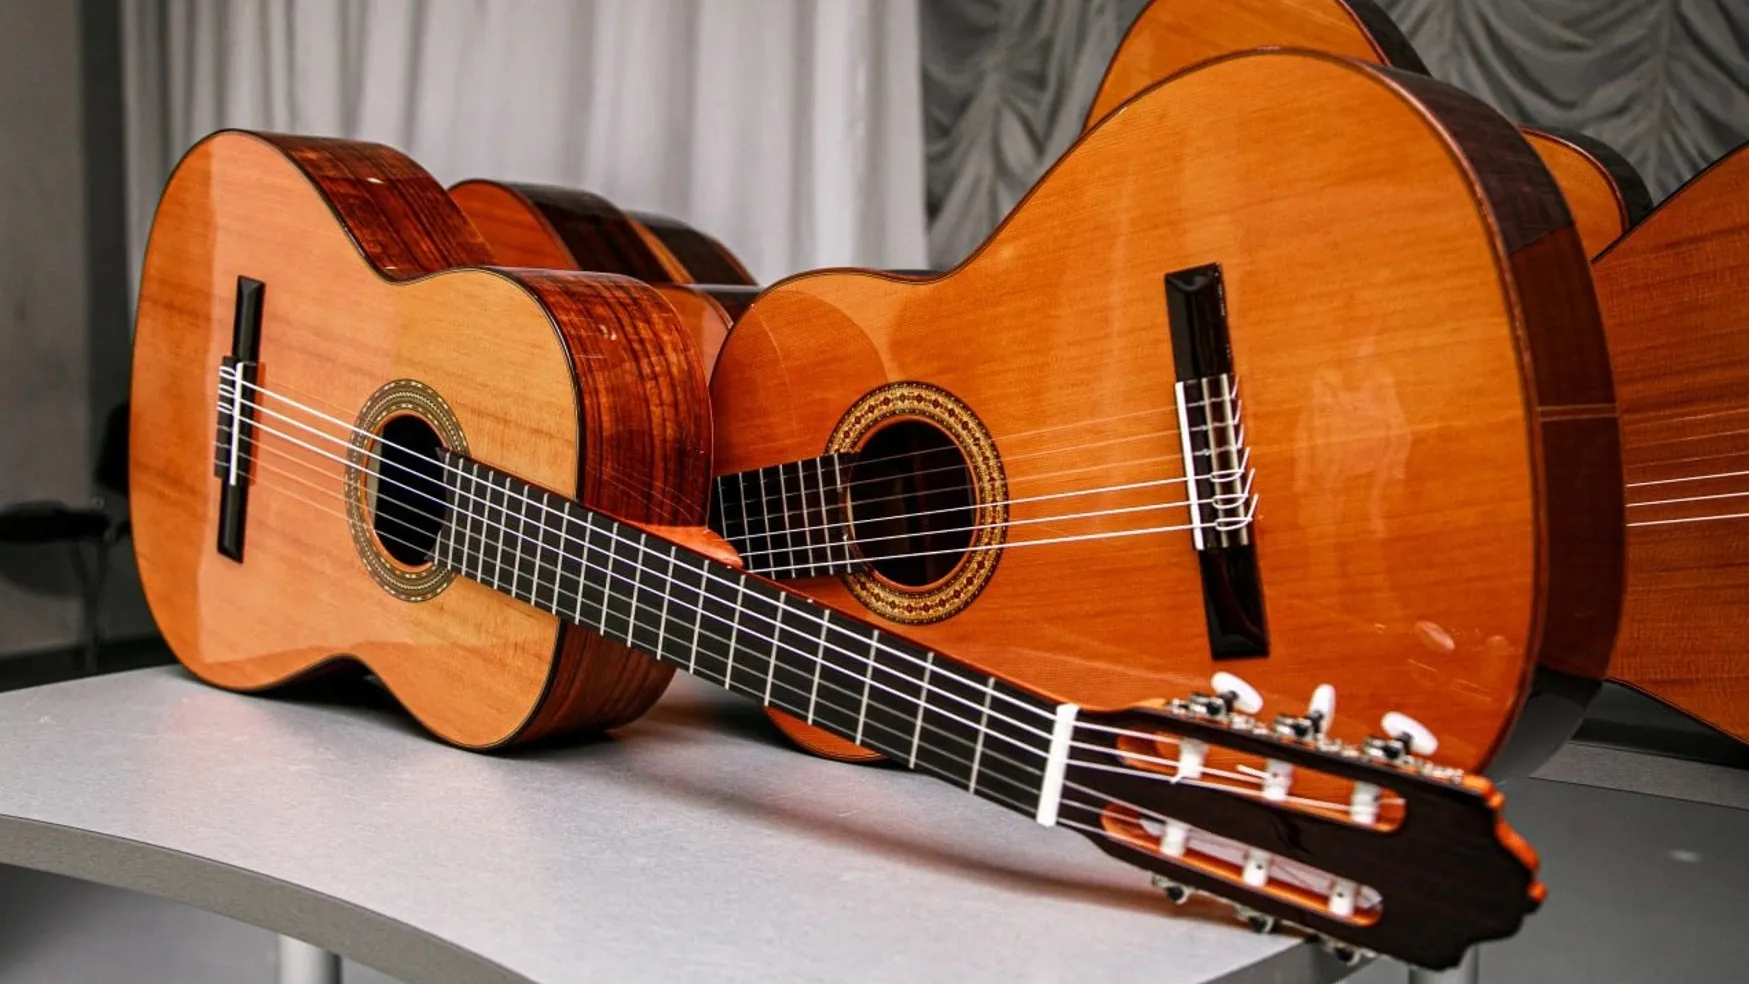 Гитара входит в число самых популярных инструментов у ямальцев. Фото предоставлено пресс-службой губернатора округа